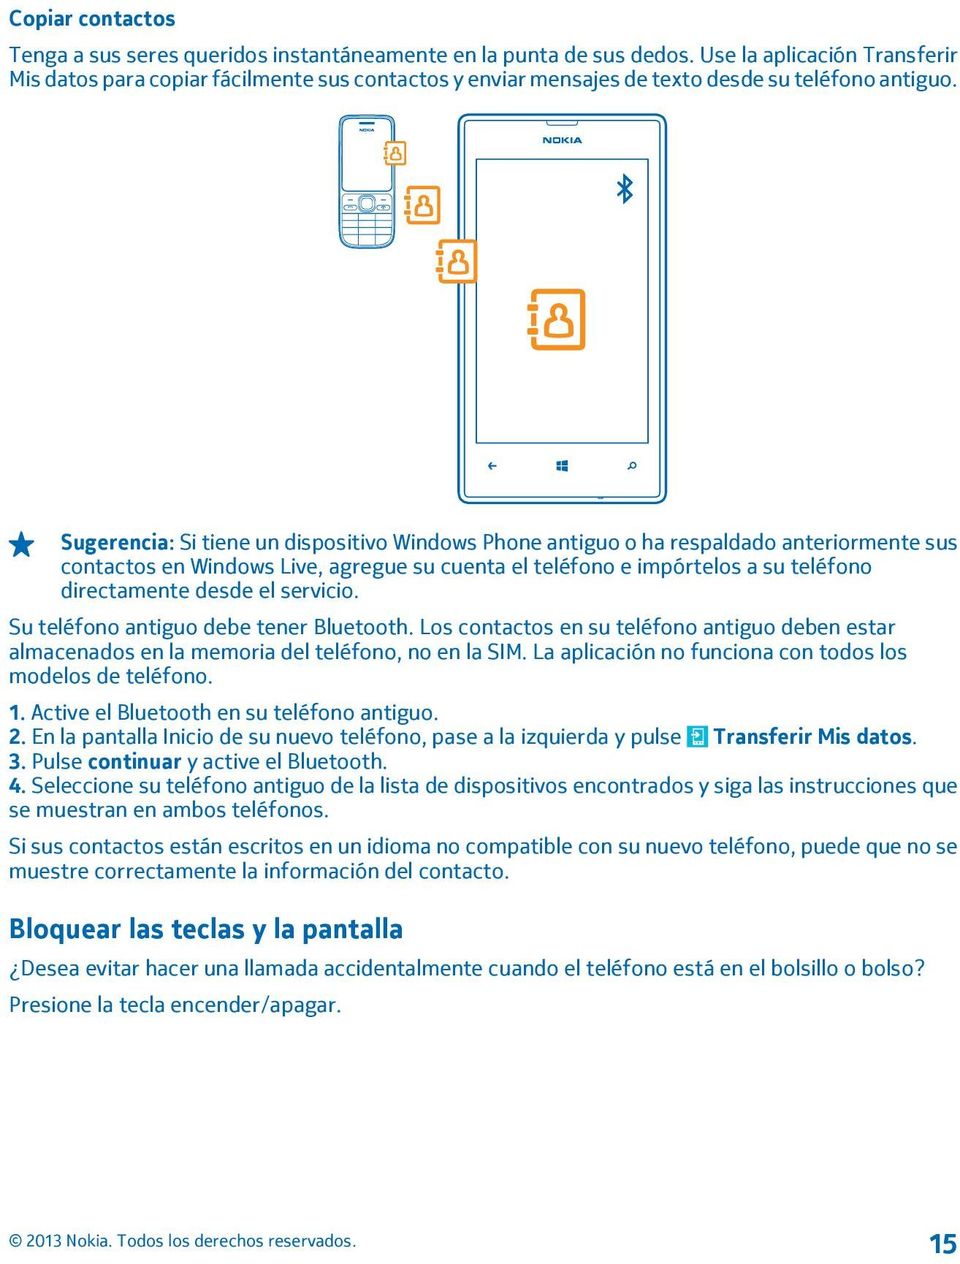 Sugerencia: Si tiene un dispositivo Windows Phone antiguo o ha respaldado anteriormente sus contactos en Windows Live, agregue su cuenta el teléfono e impórtelos a su teléfono directamente desde el